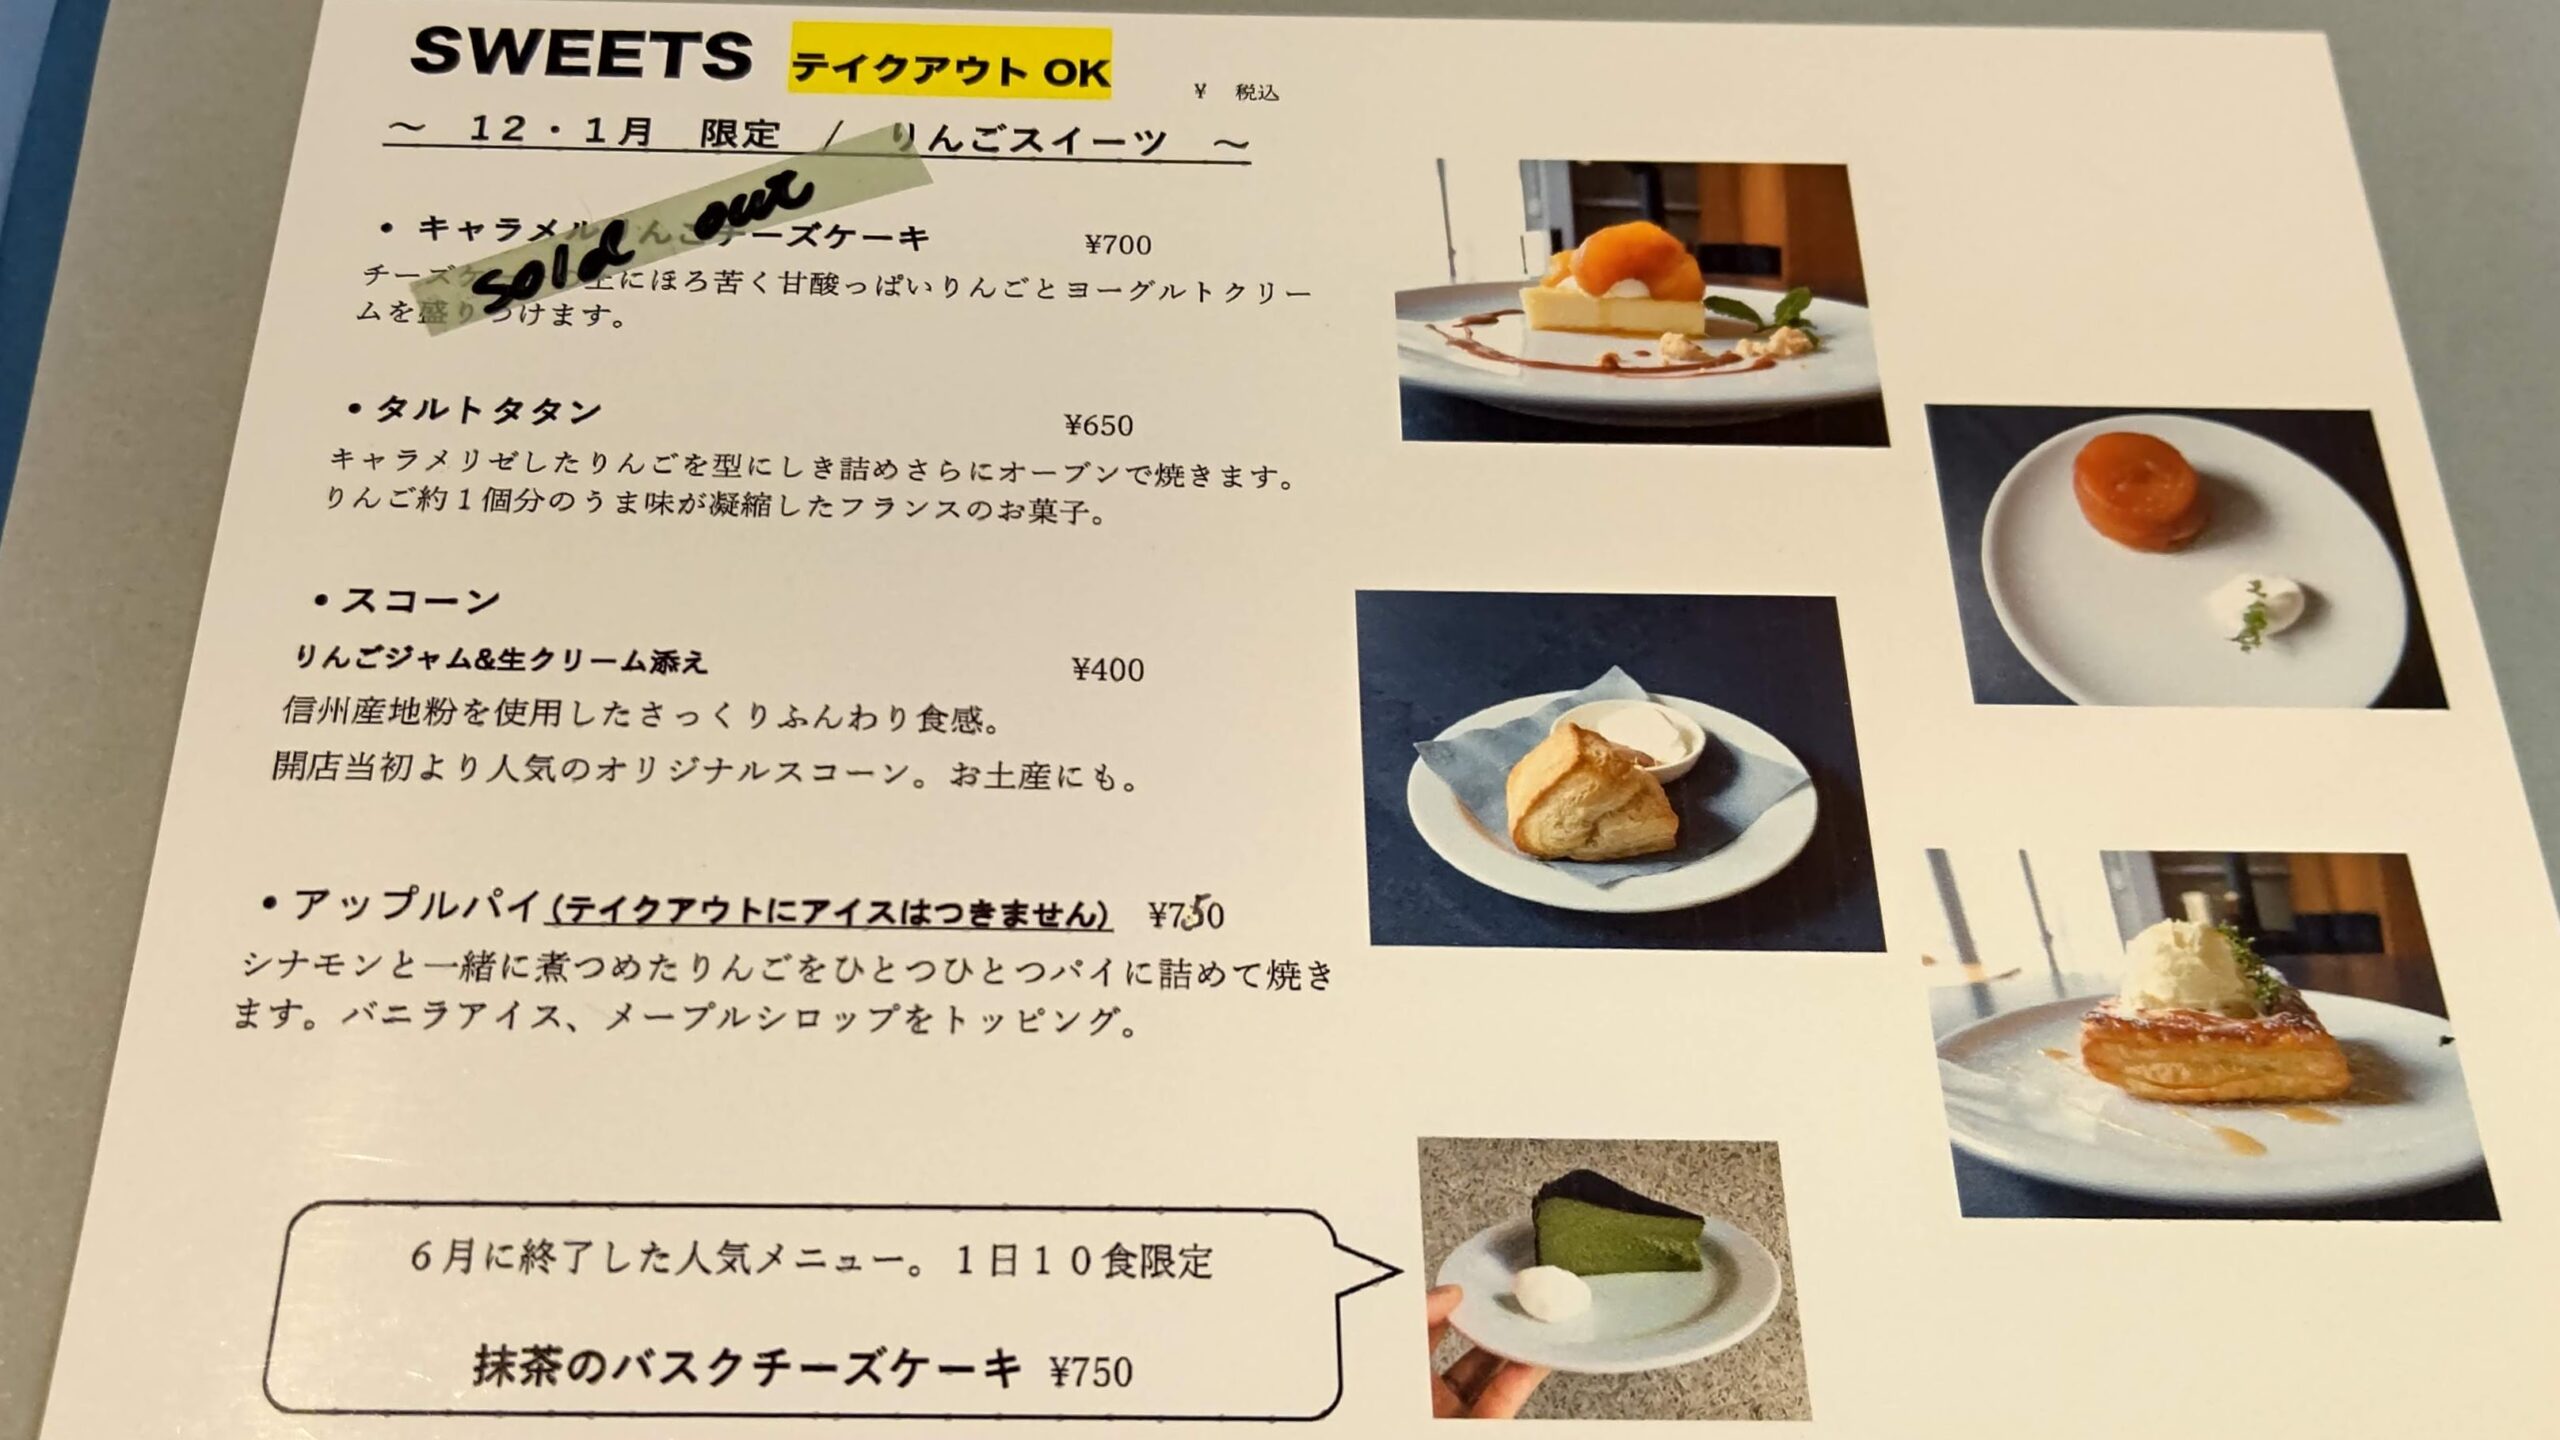 長野県北佐久郡 Cafe hip karuizawa メニュー 12月・1月限定のりんごスイーツ